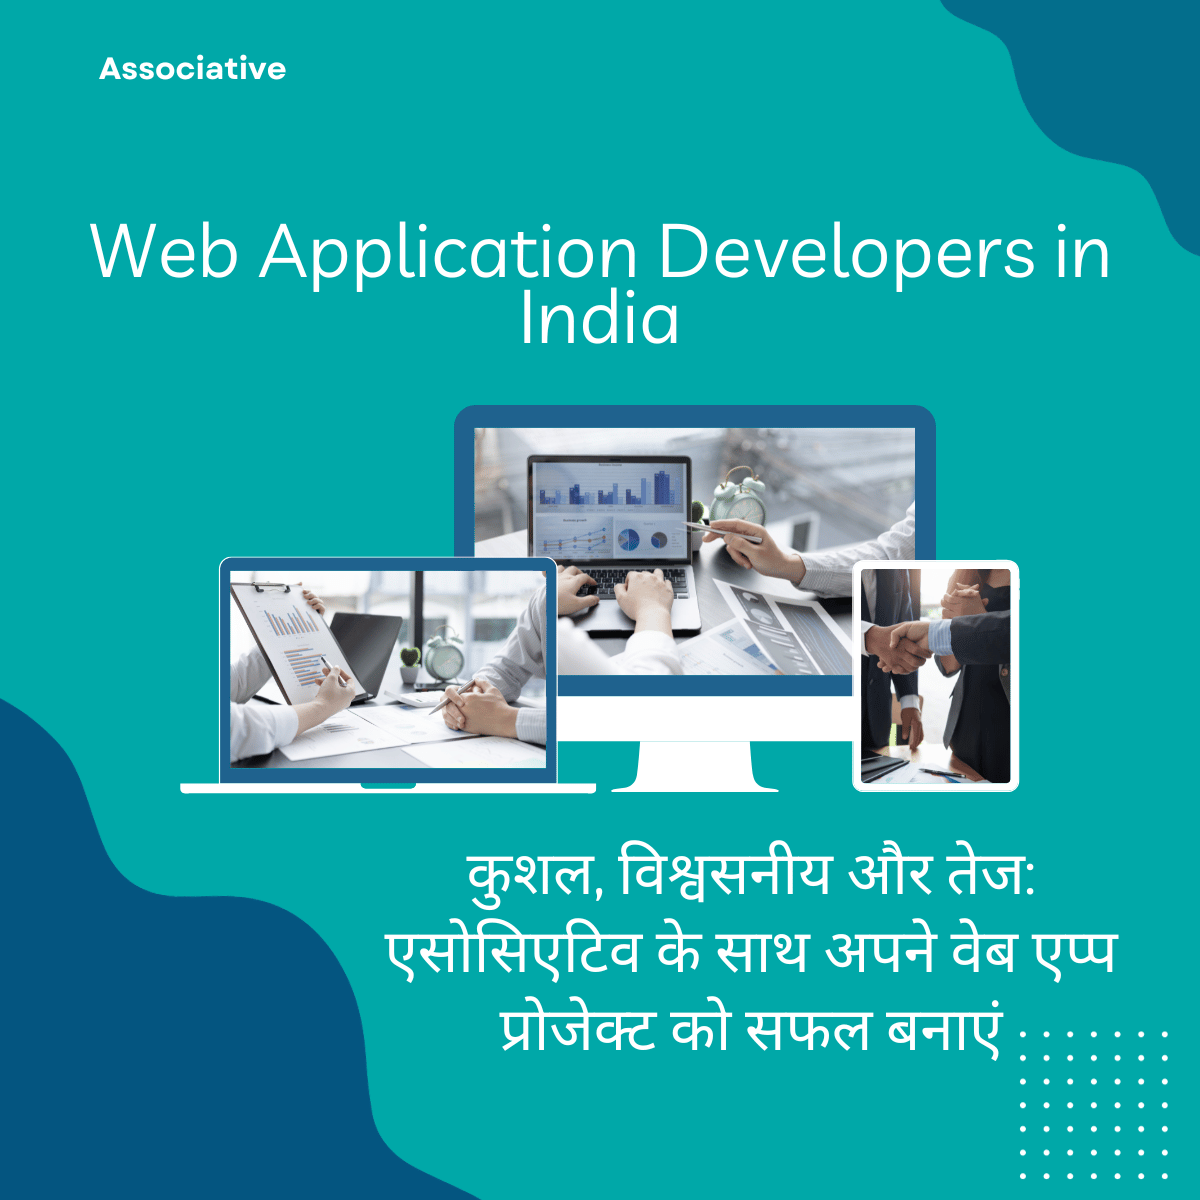 Web Application Developers in India कुशल, विश्वसनीय और तेज: एसोसिएटिव के साथ अपने वेब एप्प प्रोजेक्ट को सफल बनाएं